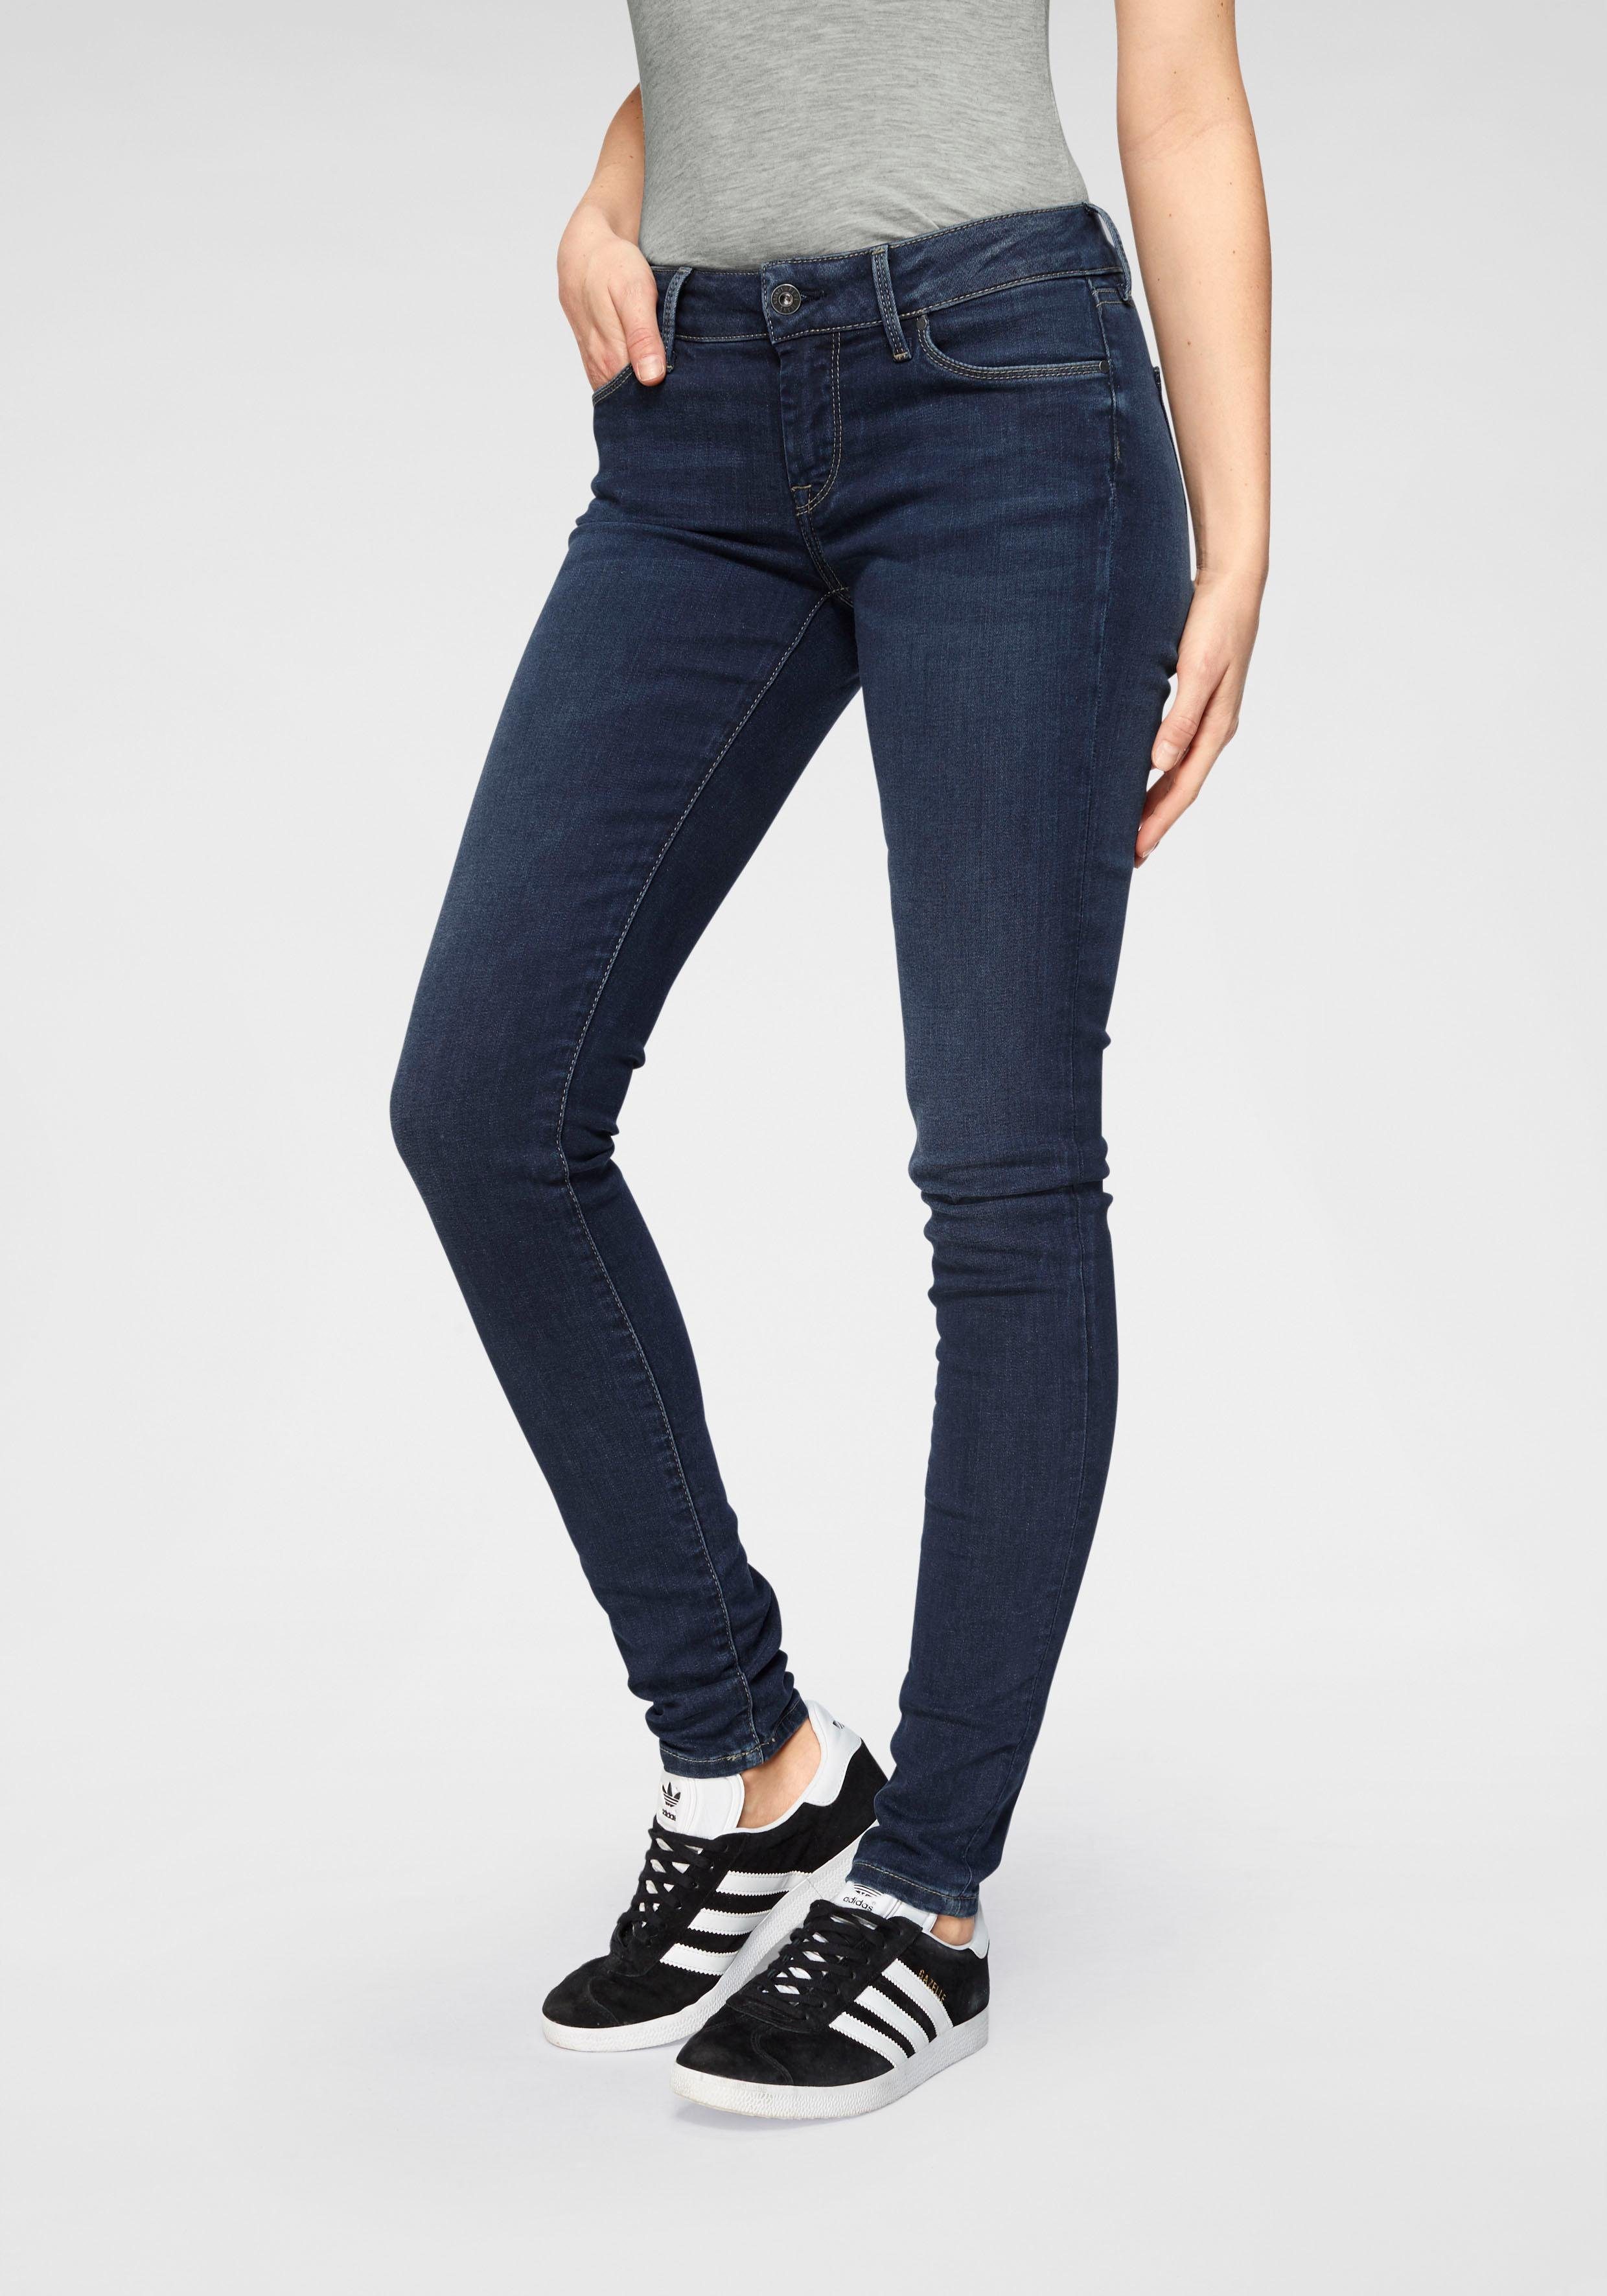 Jeans SOHO used dark worn und im Skinny-fit-Jeans 5-Pocket-Stil 1-Knopf Stretch-Anteil H45 Bund mit Pepe